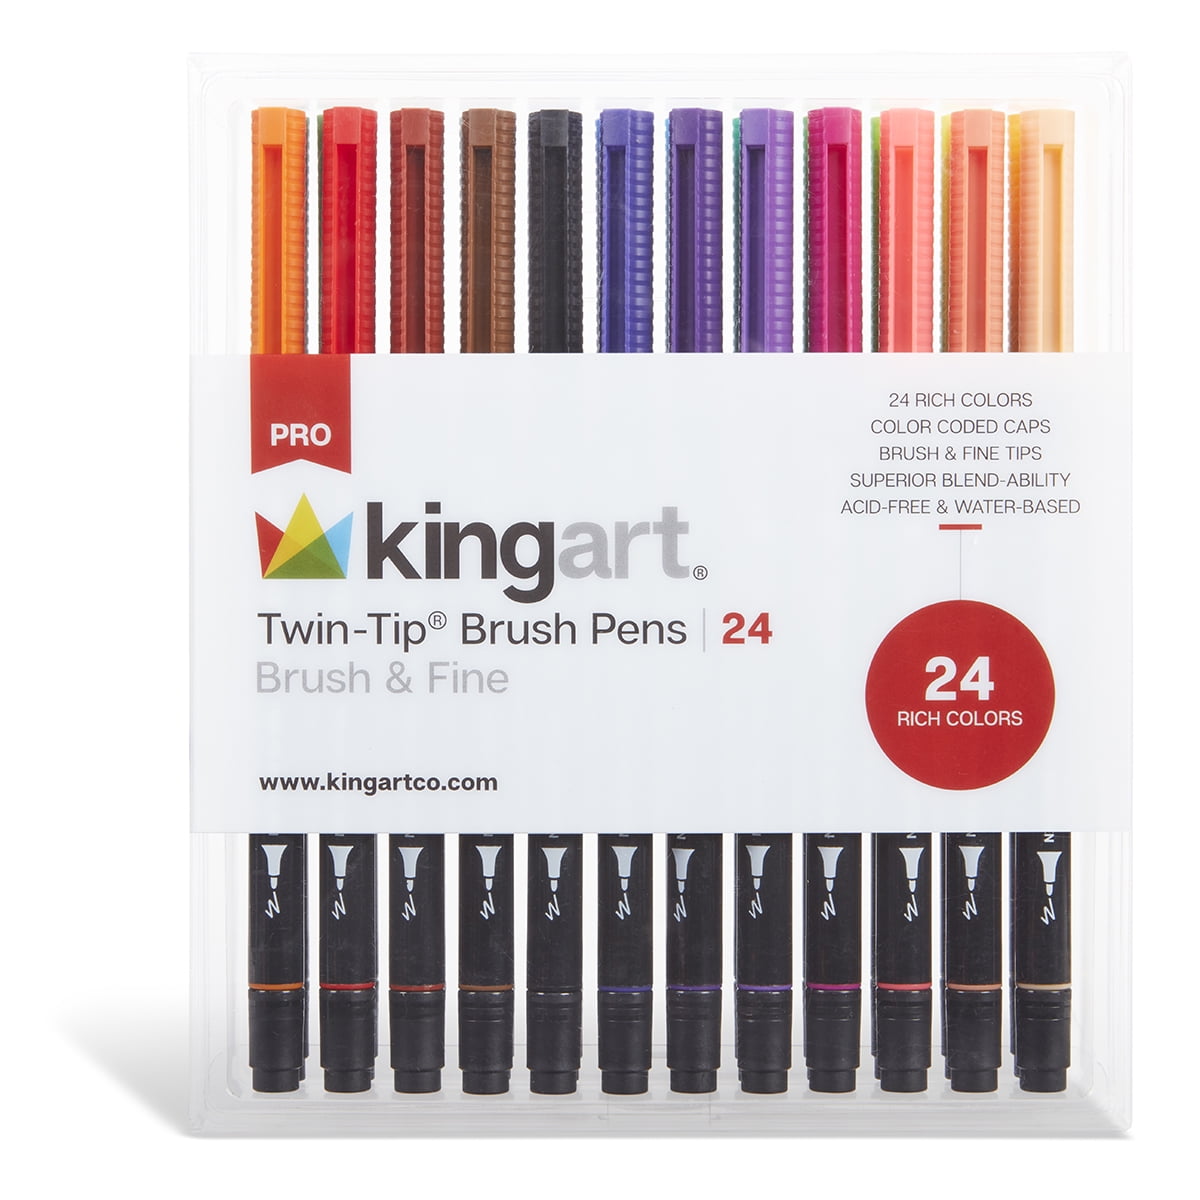 KINGART PRO Twin-Tip Brush Pen Art Markers, Set of 24 Unique & Vivid Colors